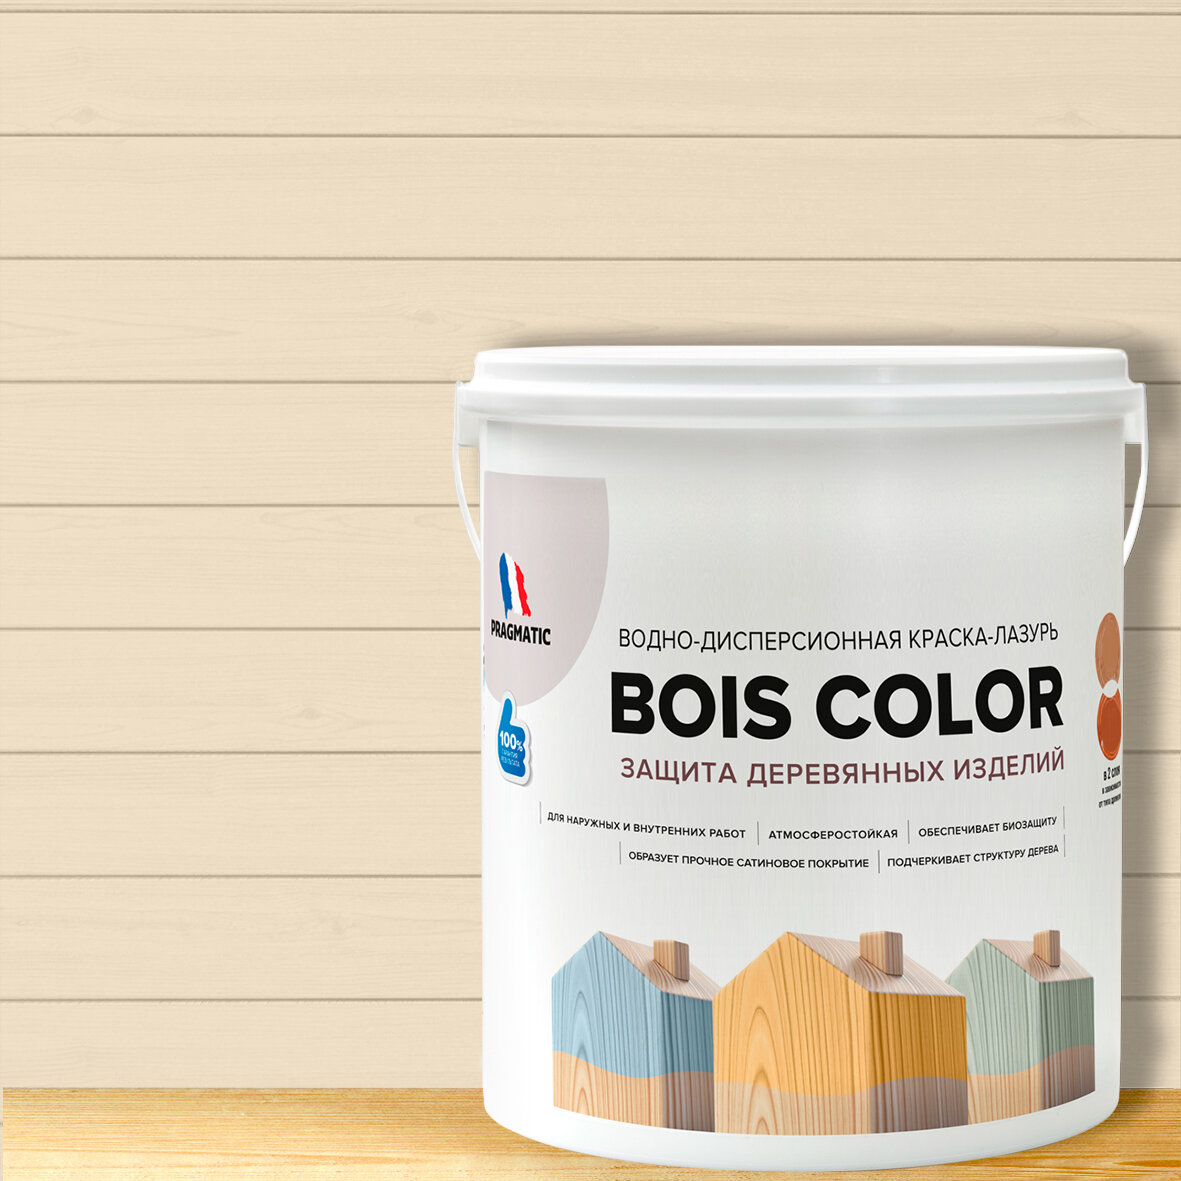 Краска (лазурь) для деревянных поверхностей и фасадов, обеспечивает биозащиту, защищает от плесени, грибков, атмосферостойкая, водоотталкивающая BOIS COLOR 0,9 л цвет Бежевый 8531